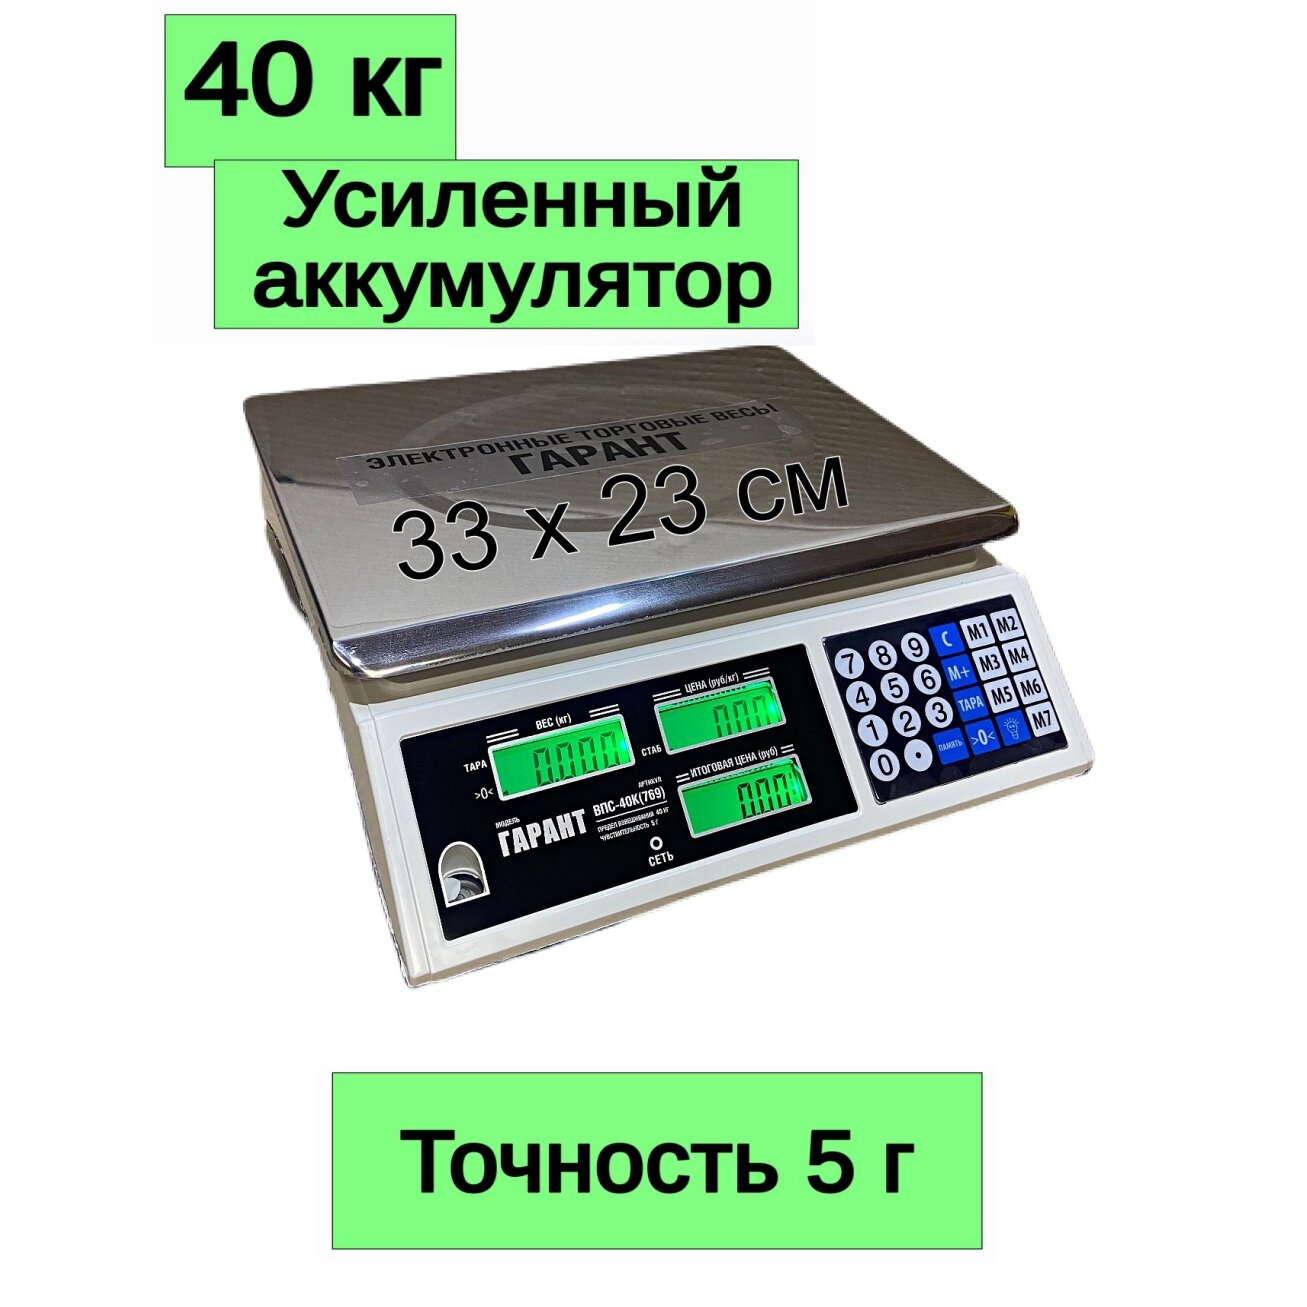 Весы торговые настольные электронные Гарант ВПС-40К до 40 кг